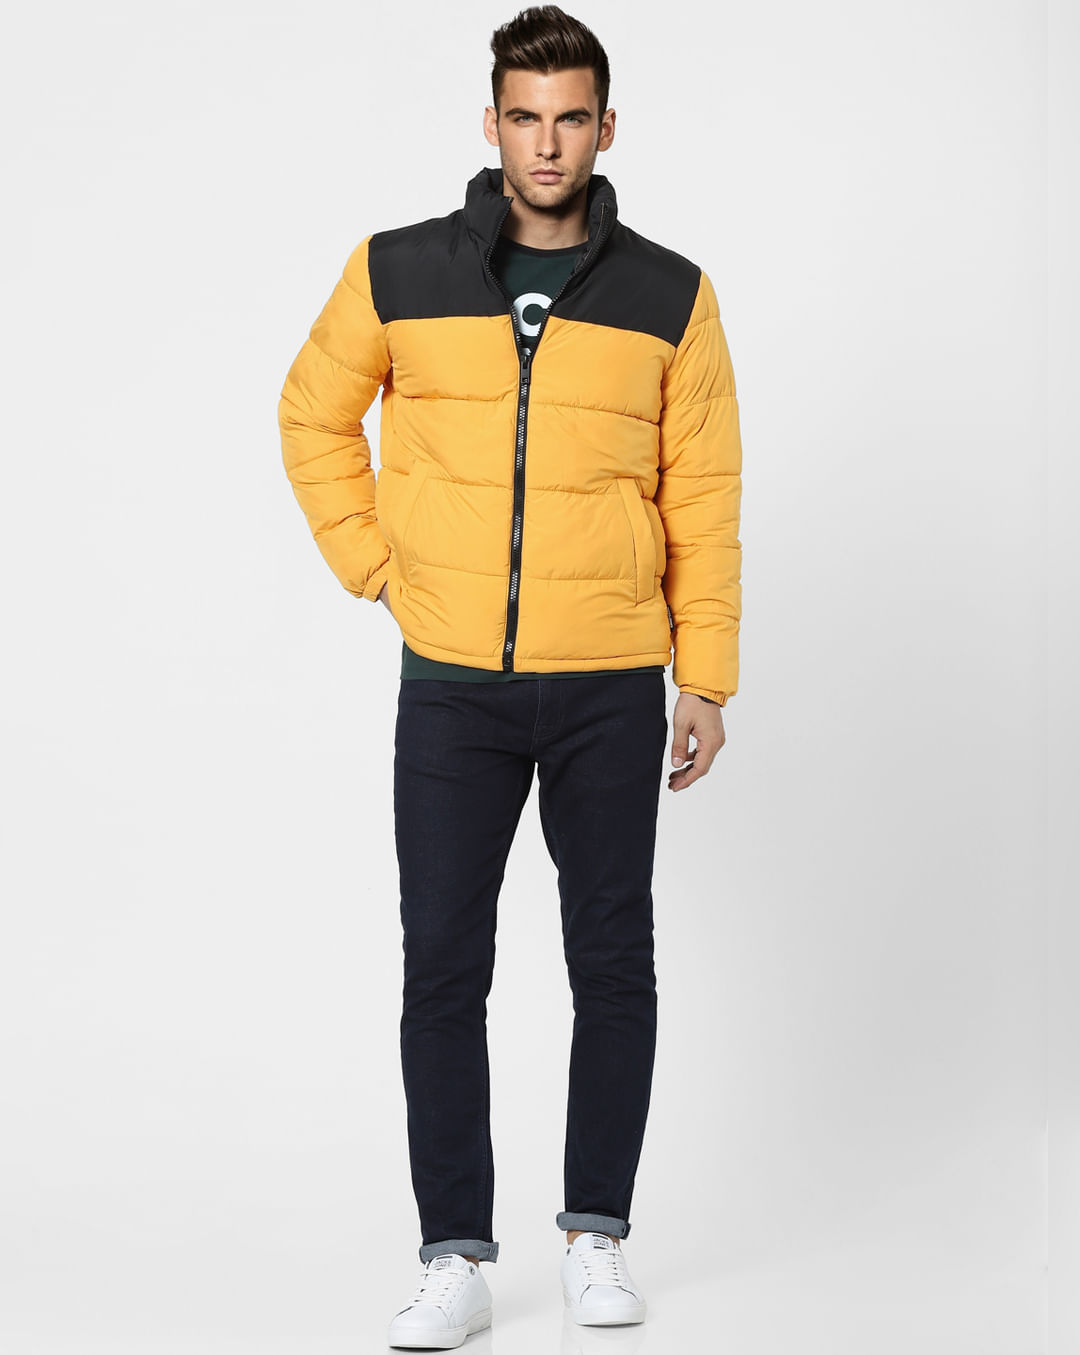 Buy Men Yellow High Neck Puffer Winter Jacket Online